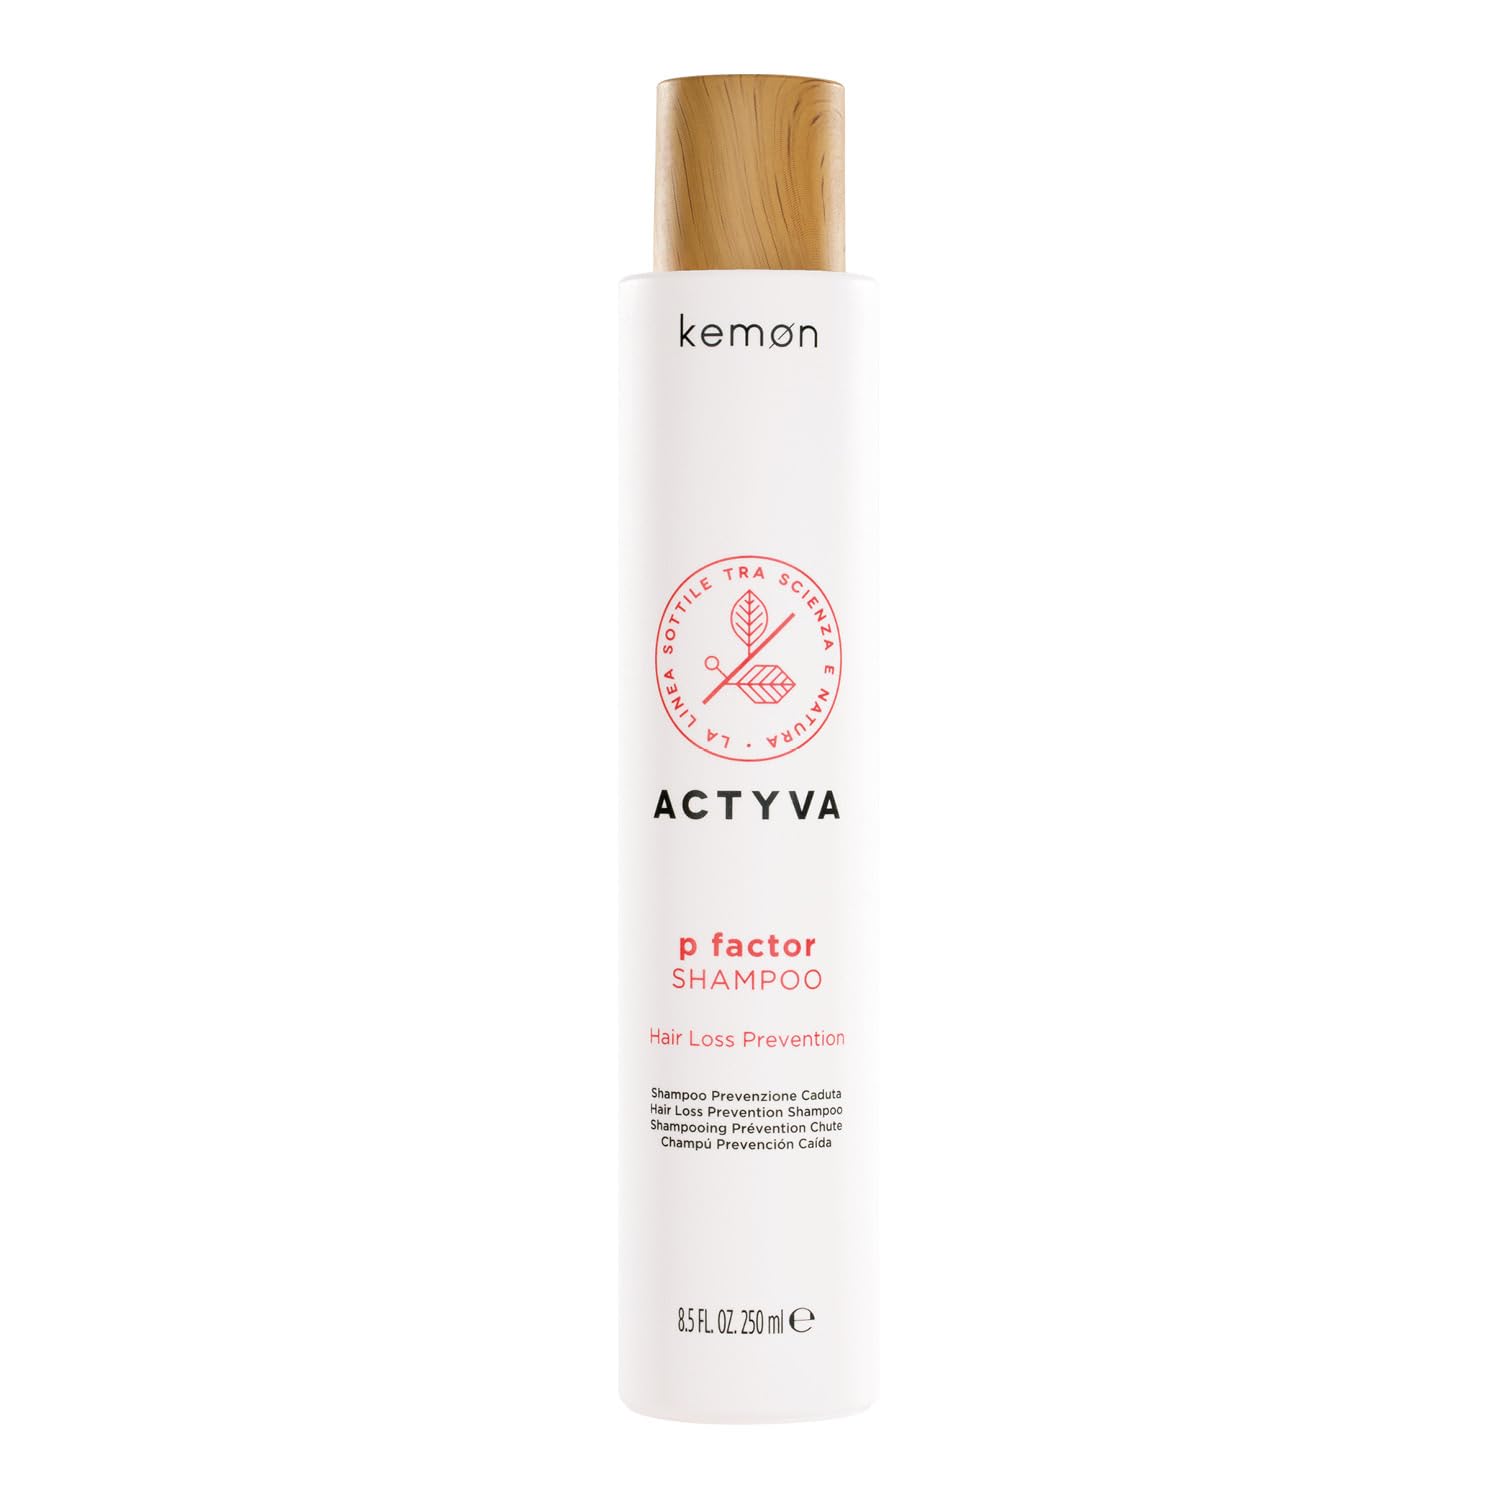 Kemon - Actyva P Factor Shampoo, Shampoo zur Vorbeugung von Haarfallen, erfrischend und anregend, farblos, 250 Milliliter